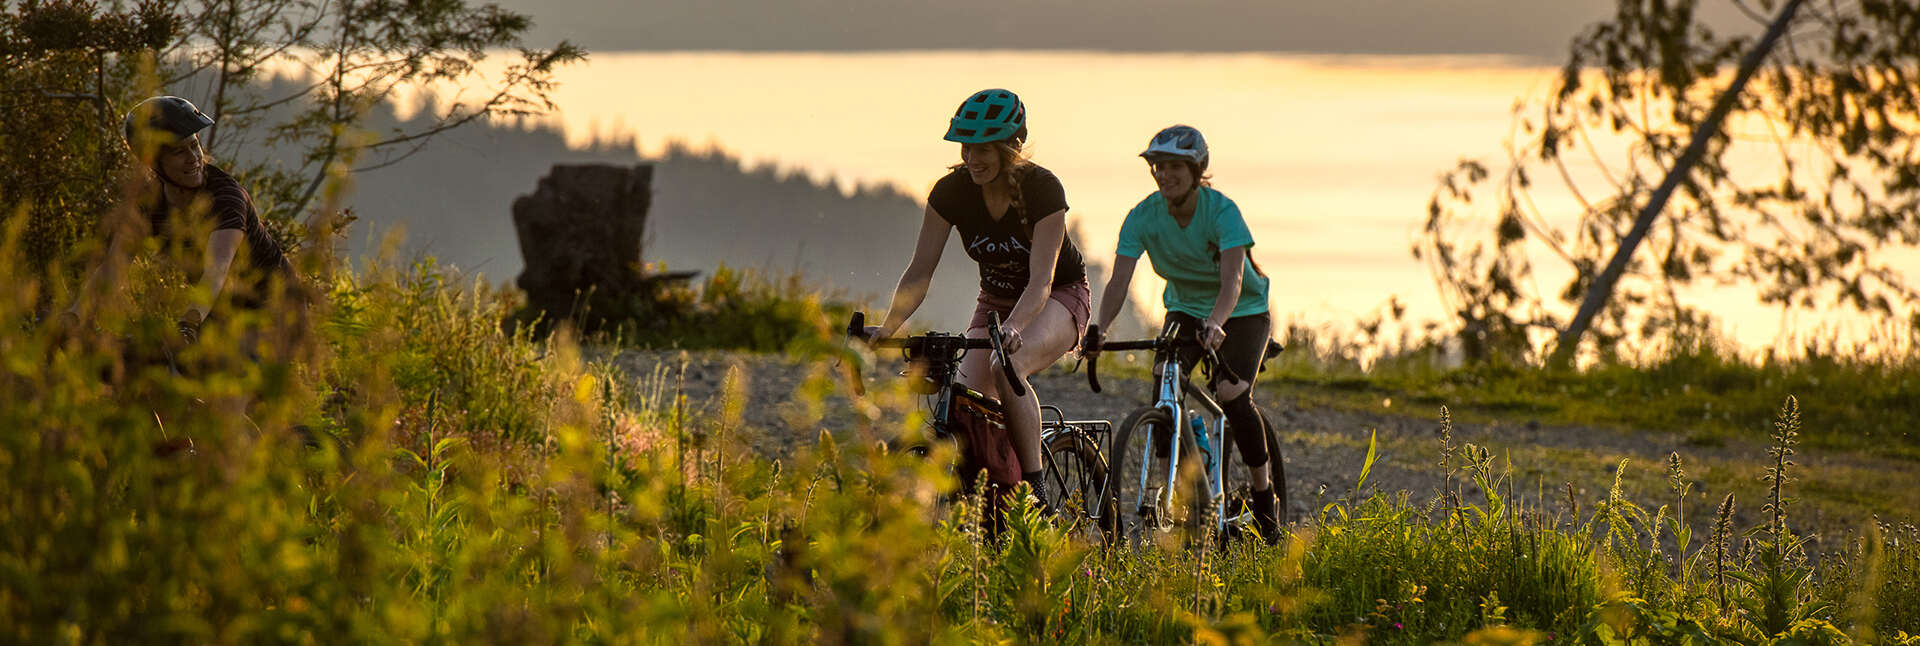 2 girls & 1 guy riding drop bar gravel bikes near lake and mountains at sunset